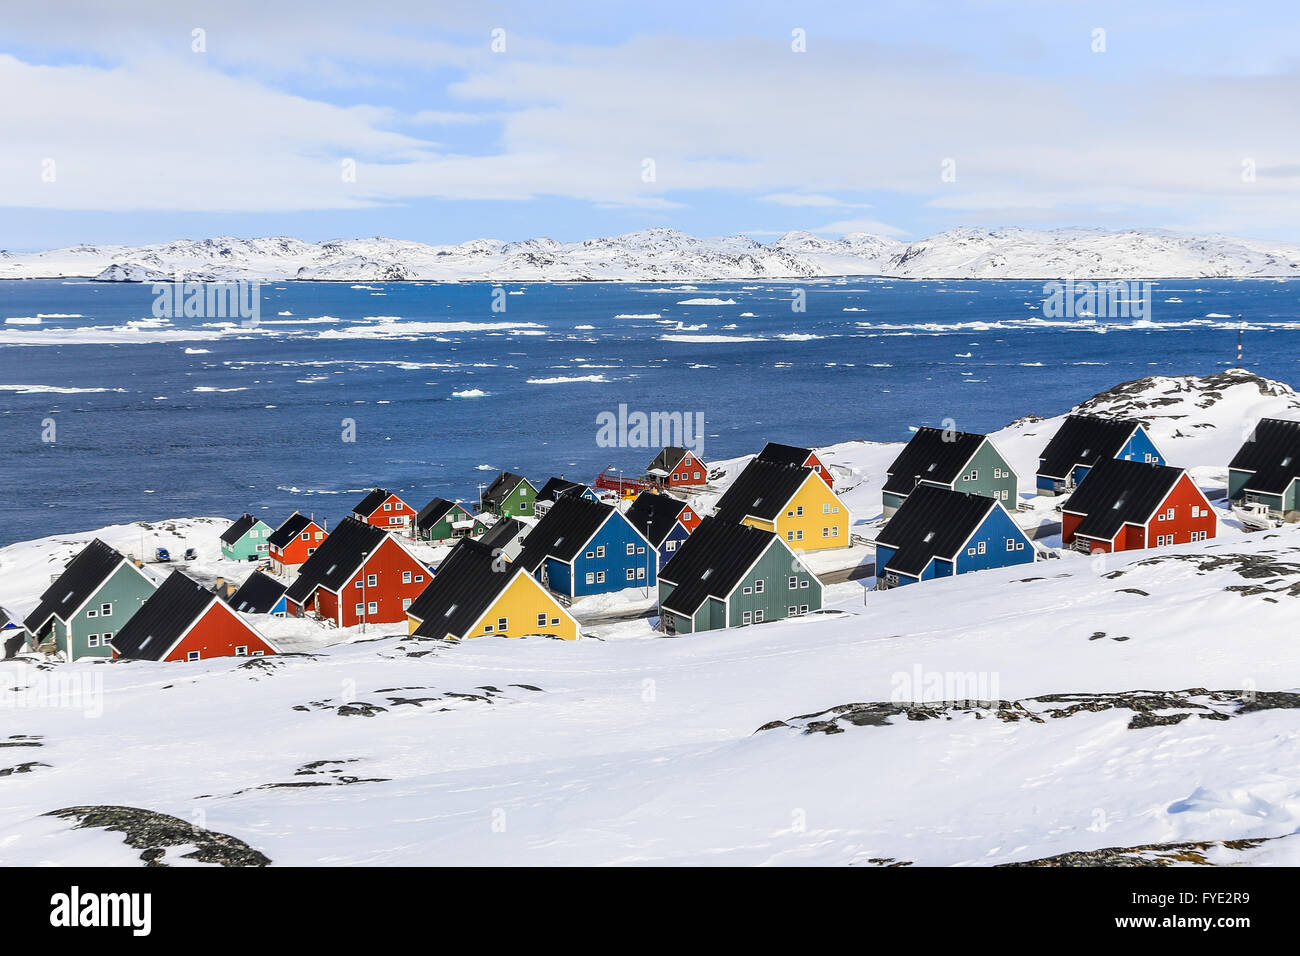 Les couleurs des maisons dans une banlieue de la capitale de l'Arctique Nuuk, Greenlnand Banque D'Images